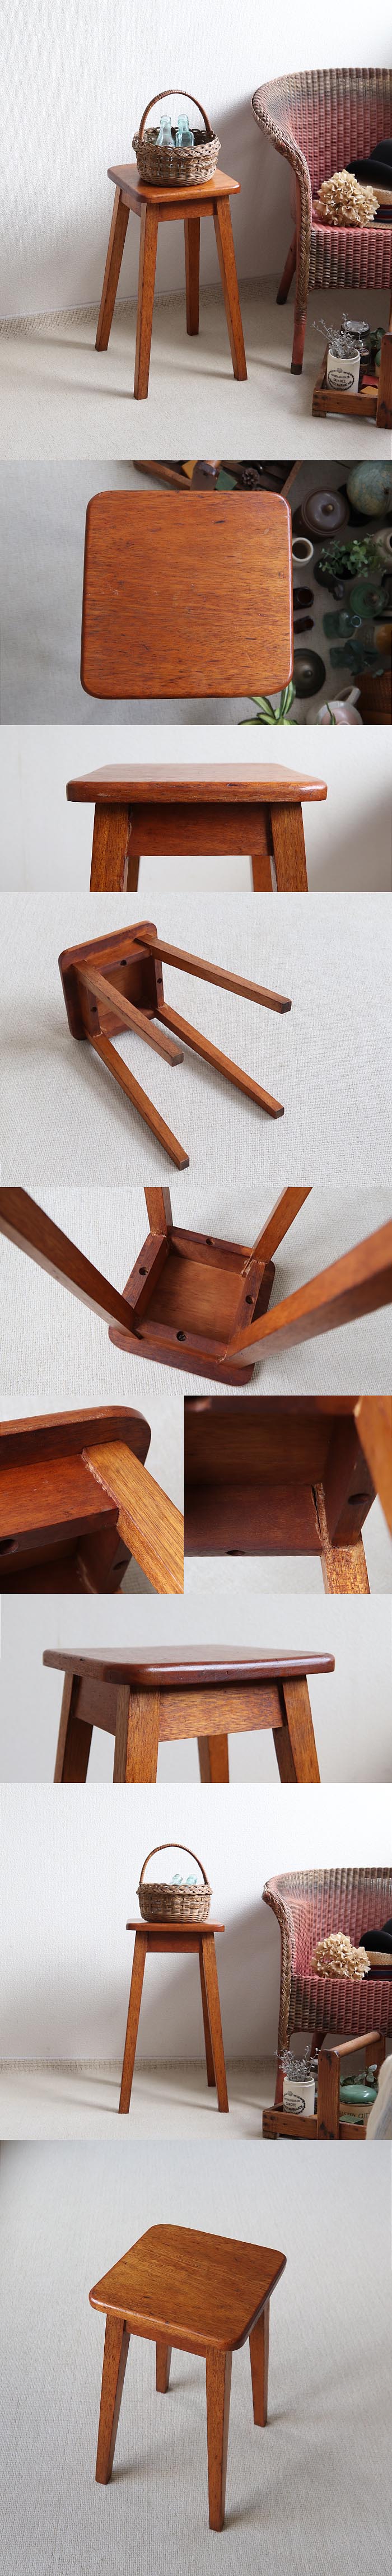 イギリス アンティーク スツール 木製椅子 飾り台 花台 インテリア